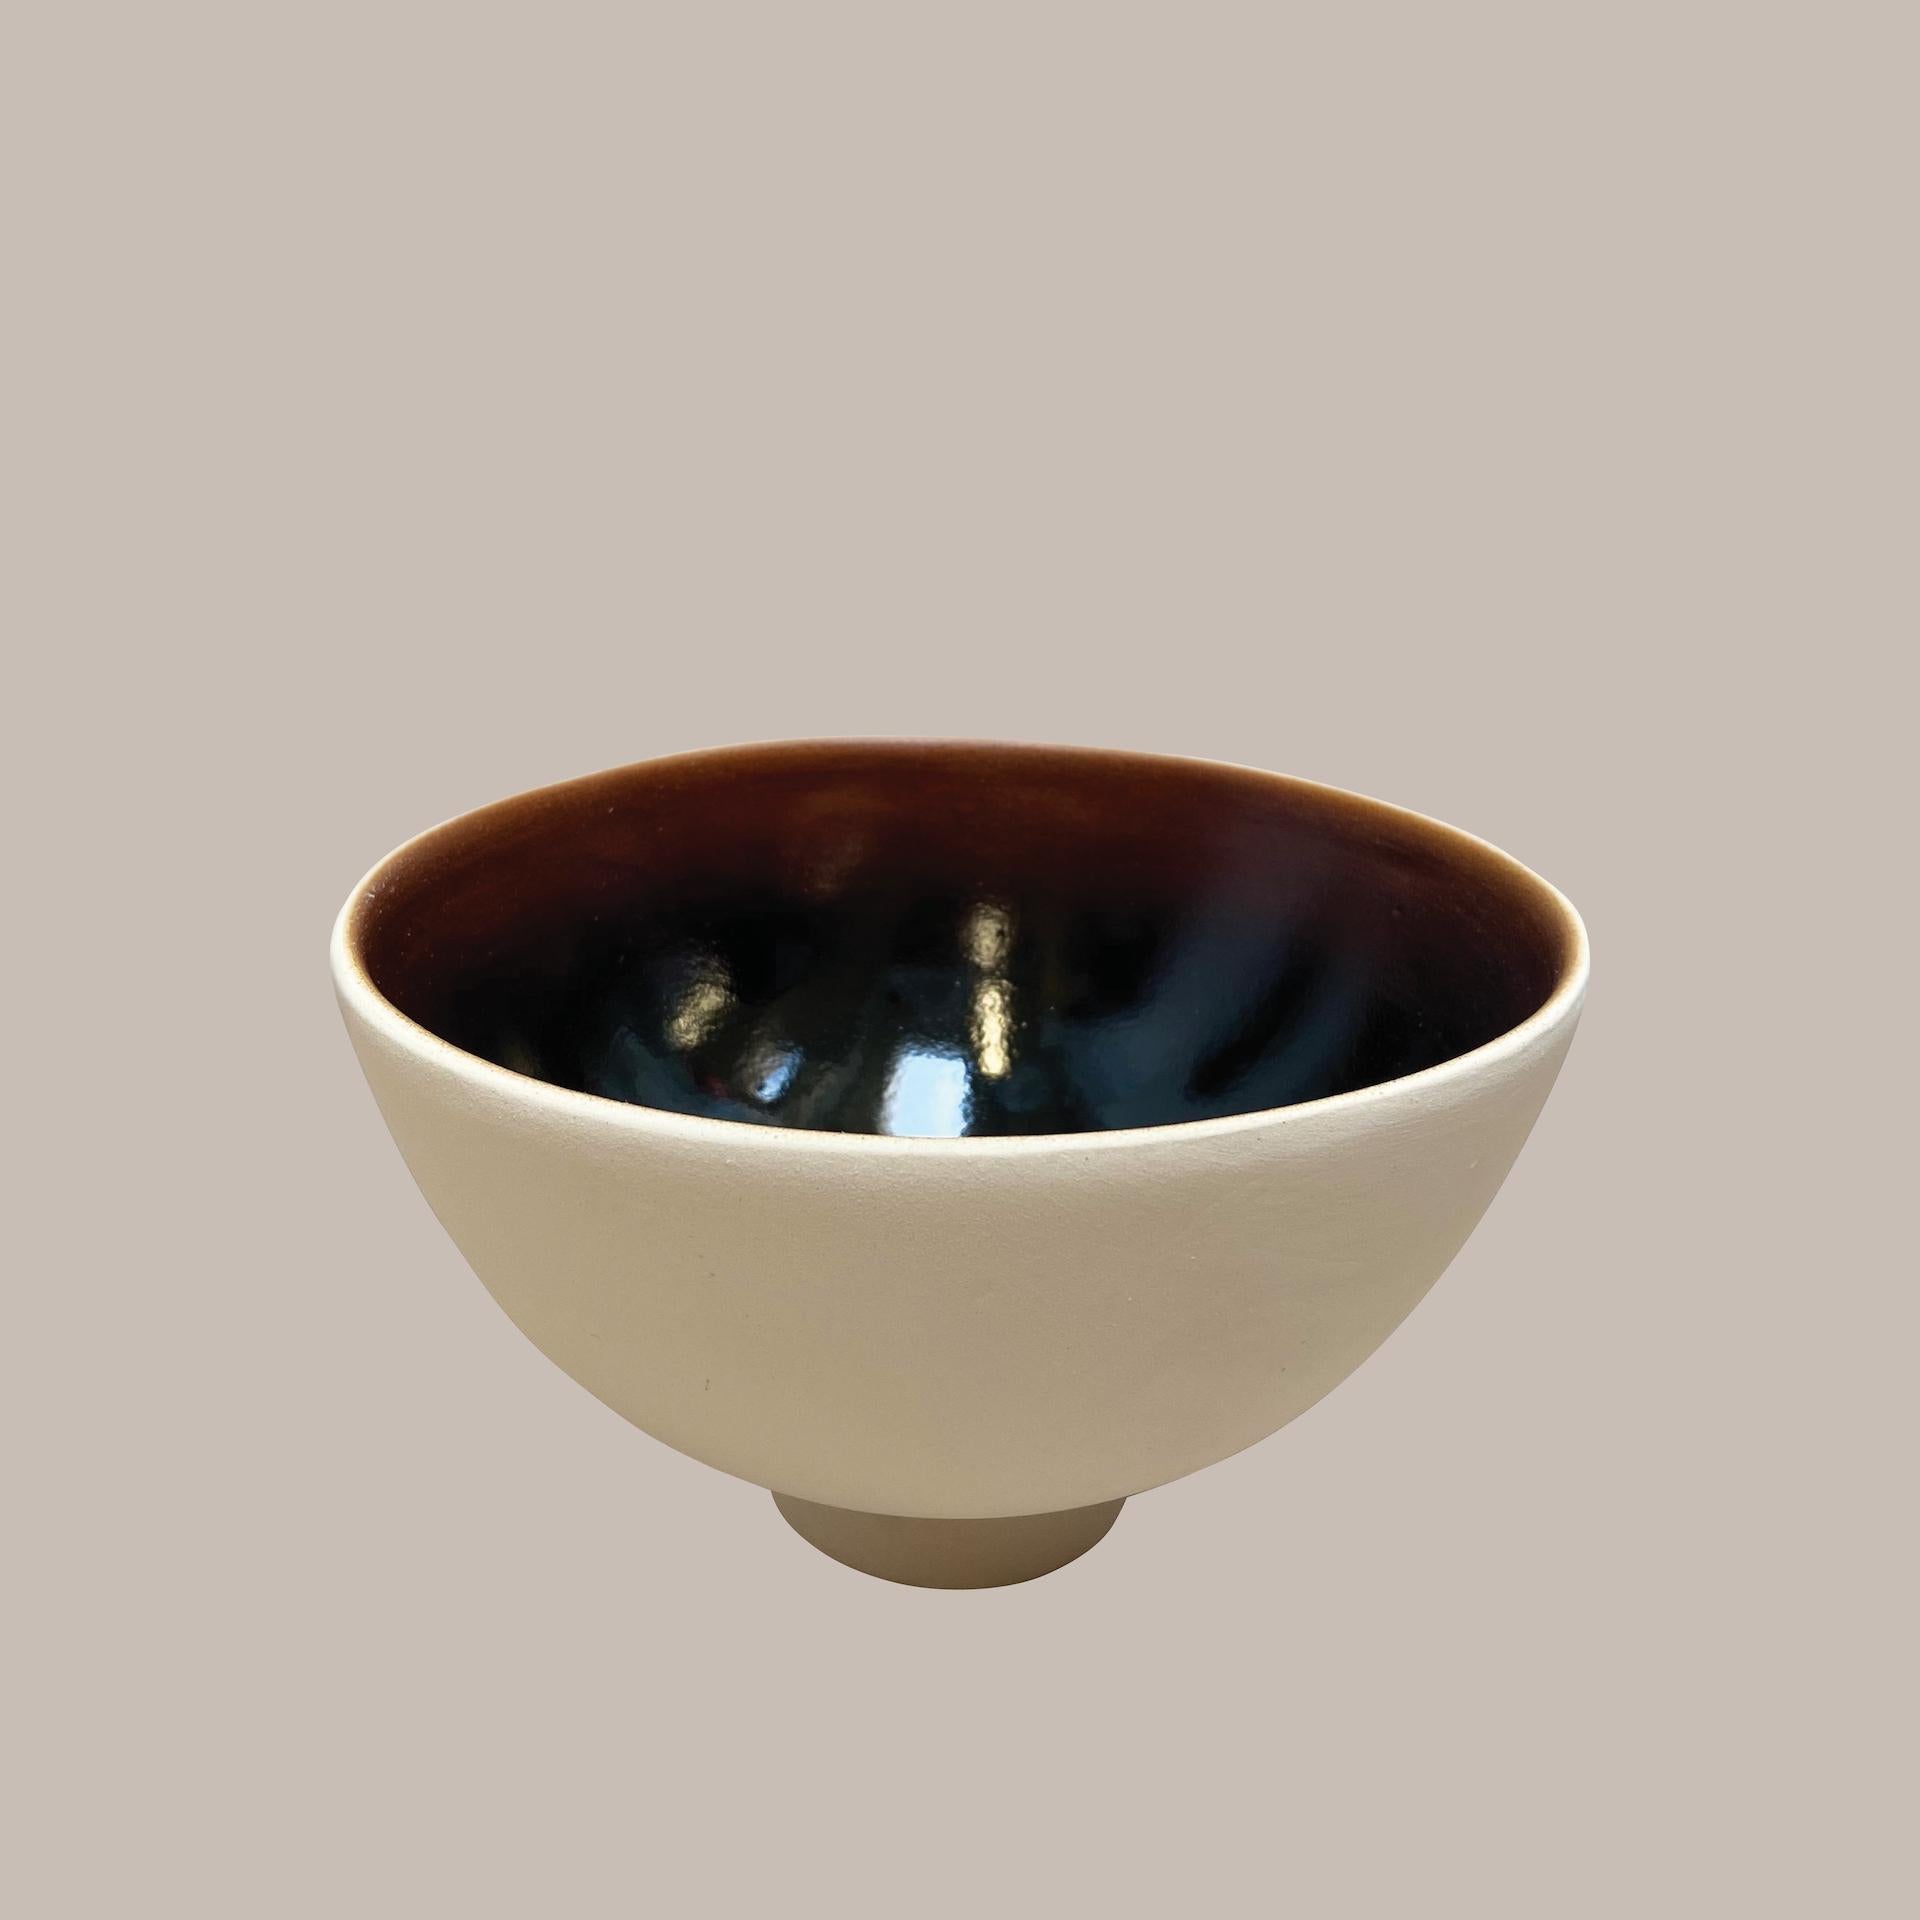 Ott un autre bol paradigmatique en céramique fait à la main par le Studio Yoon Seok-hyeon,
2019
Dimensions : L 20 x H 9 cm
MATERIAL : Ott (résine naturelle de l'arbre Ott), porcelaine
700g

Il est possible de personnaliser différentes couleurs dans